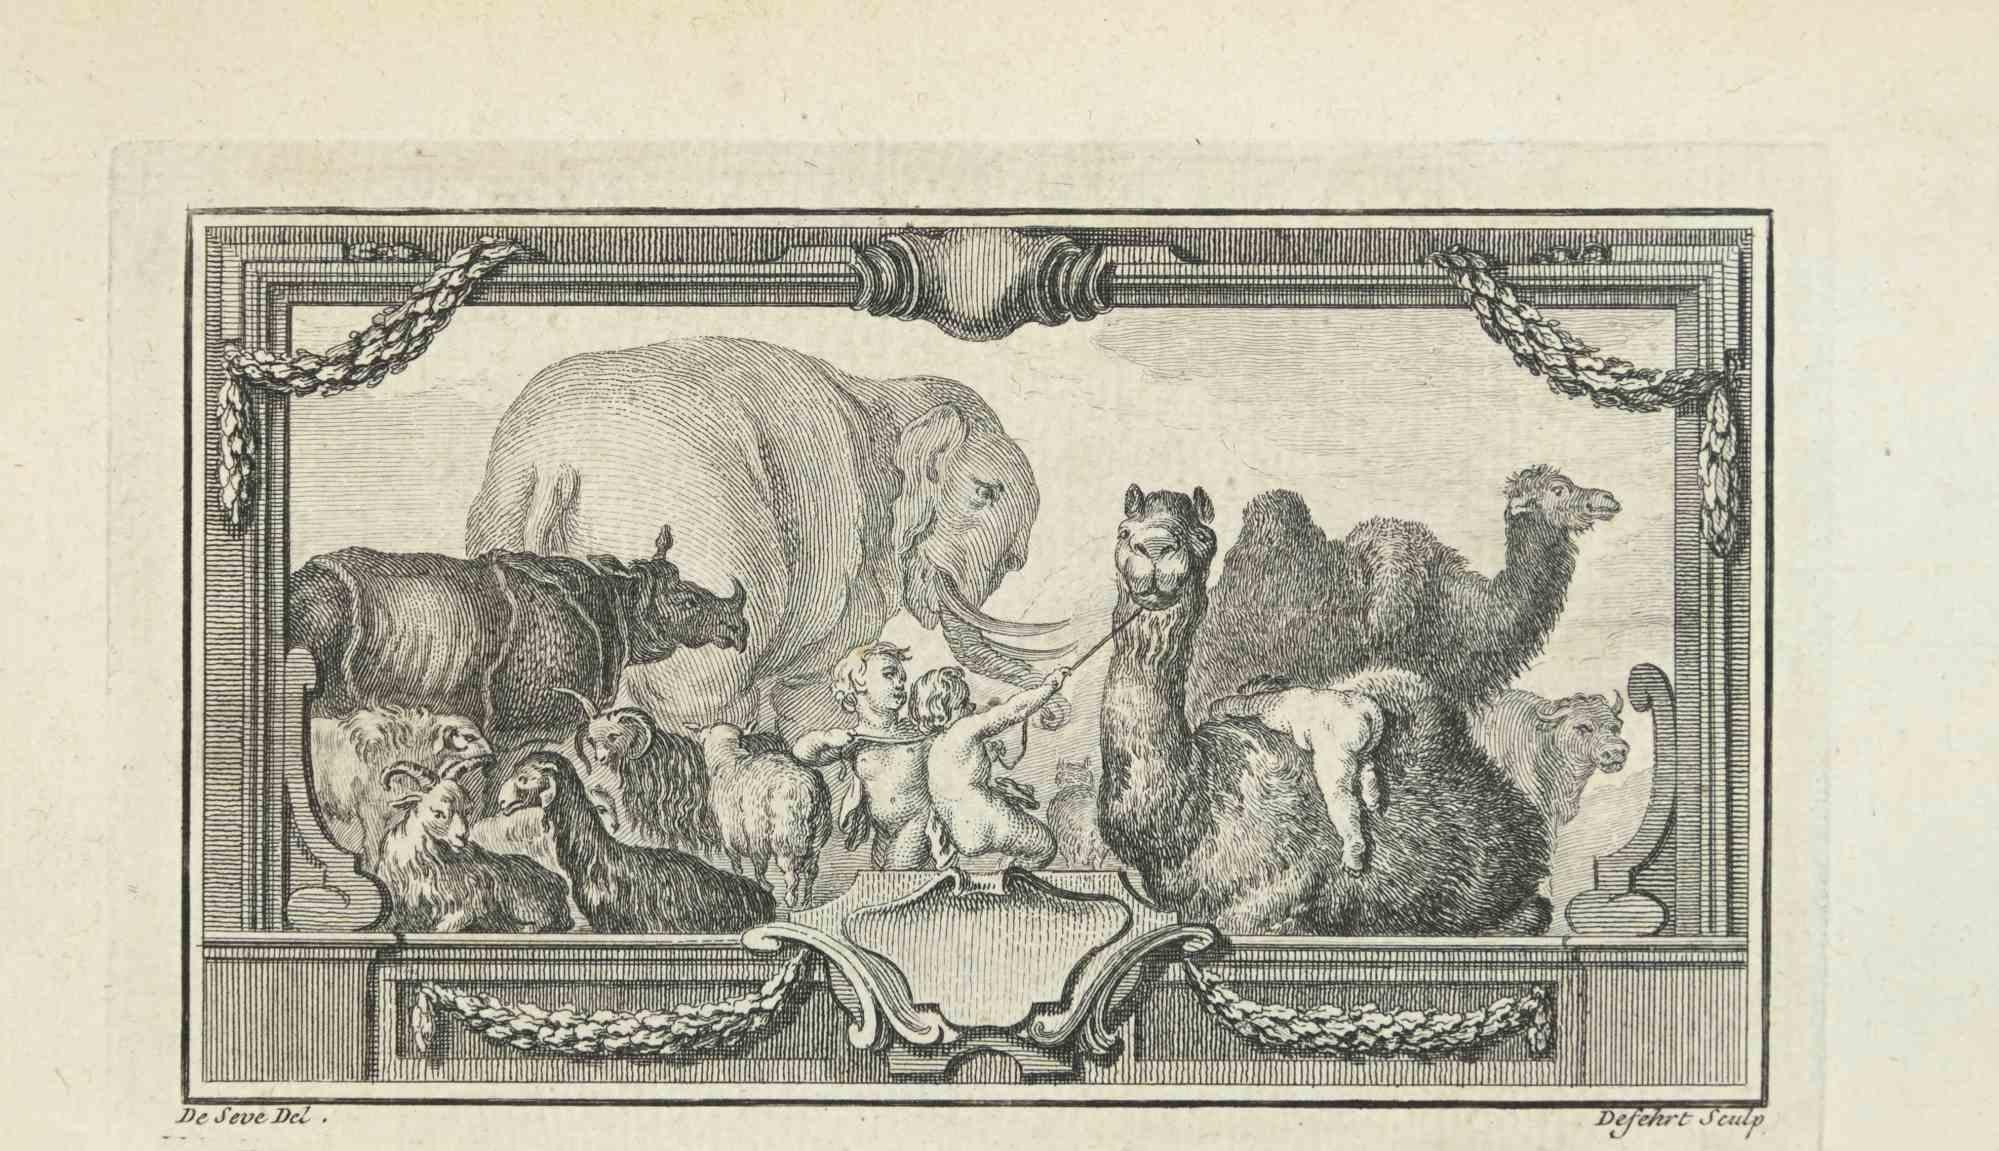 Composition avec animaux est une eau-forte réalisée par Antoine Defehrt en 1771.

Il appartient à la suite "Histoire naturelle, générale et particulière avec la description du Cabinet du Roi".

Signature de l'Artistics gravée en bas à